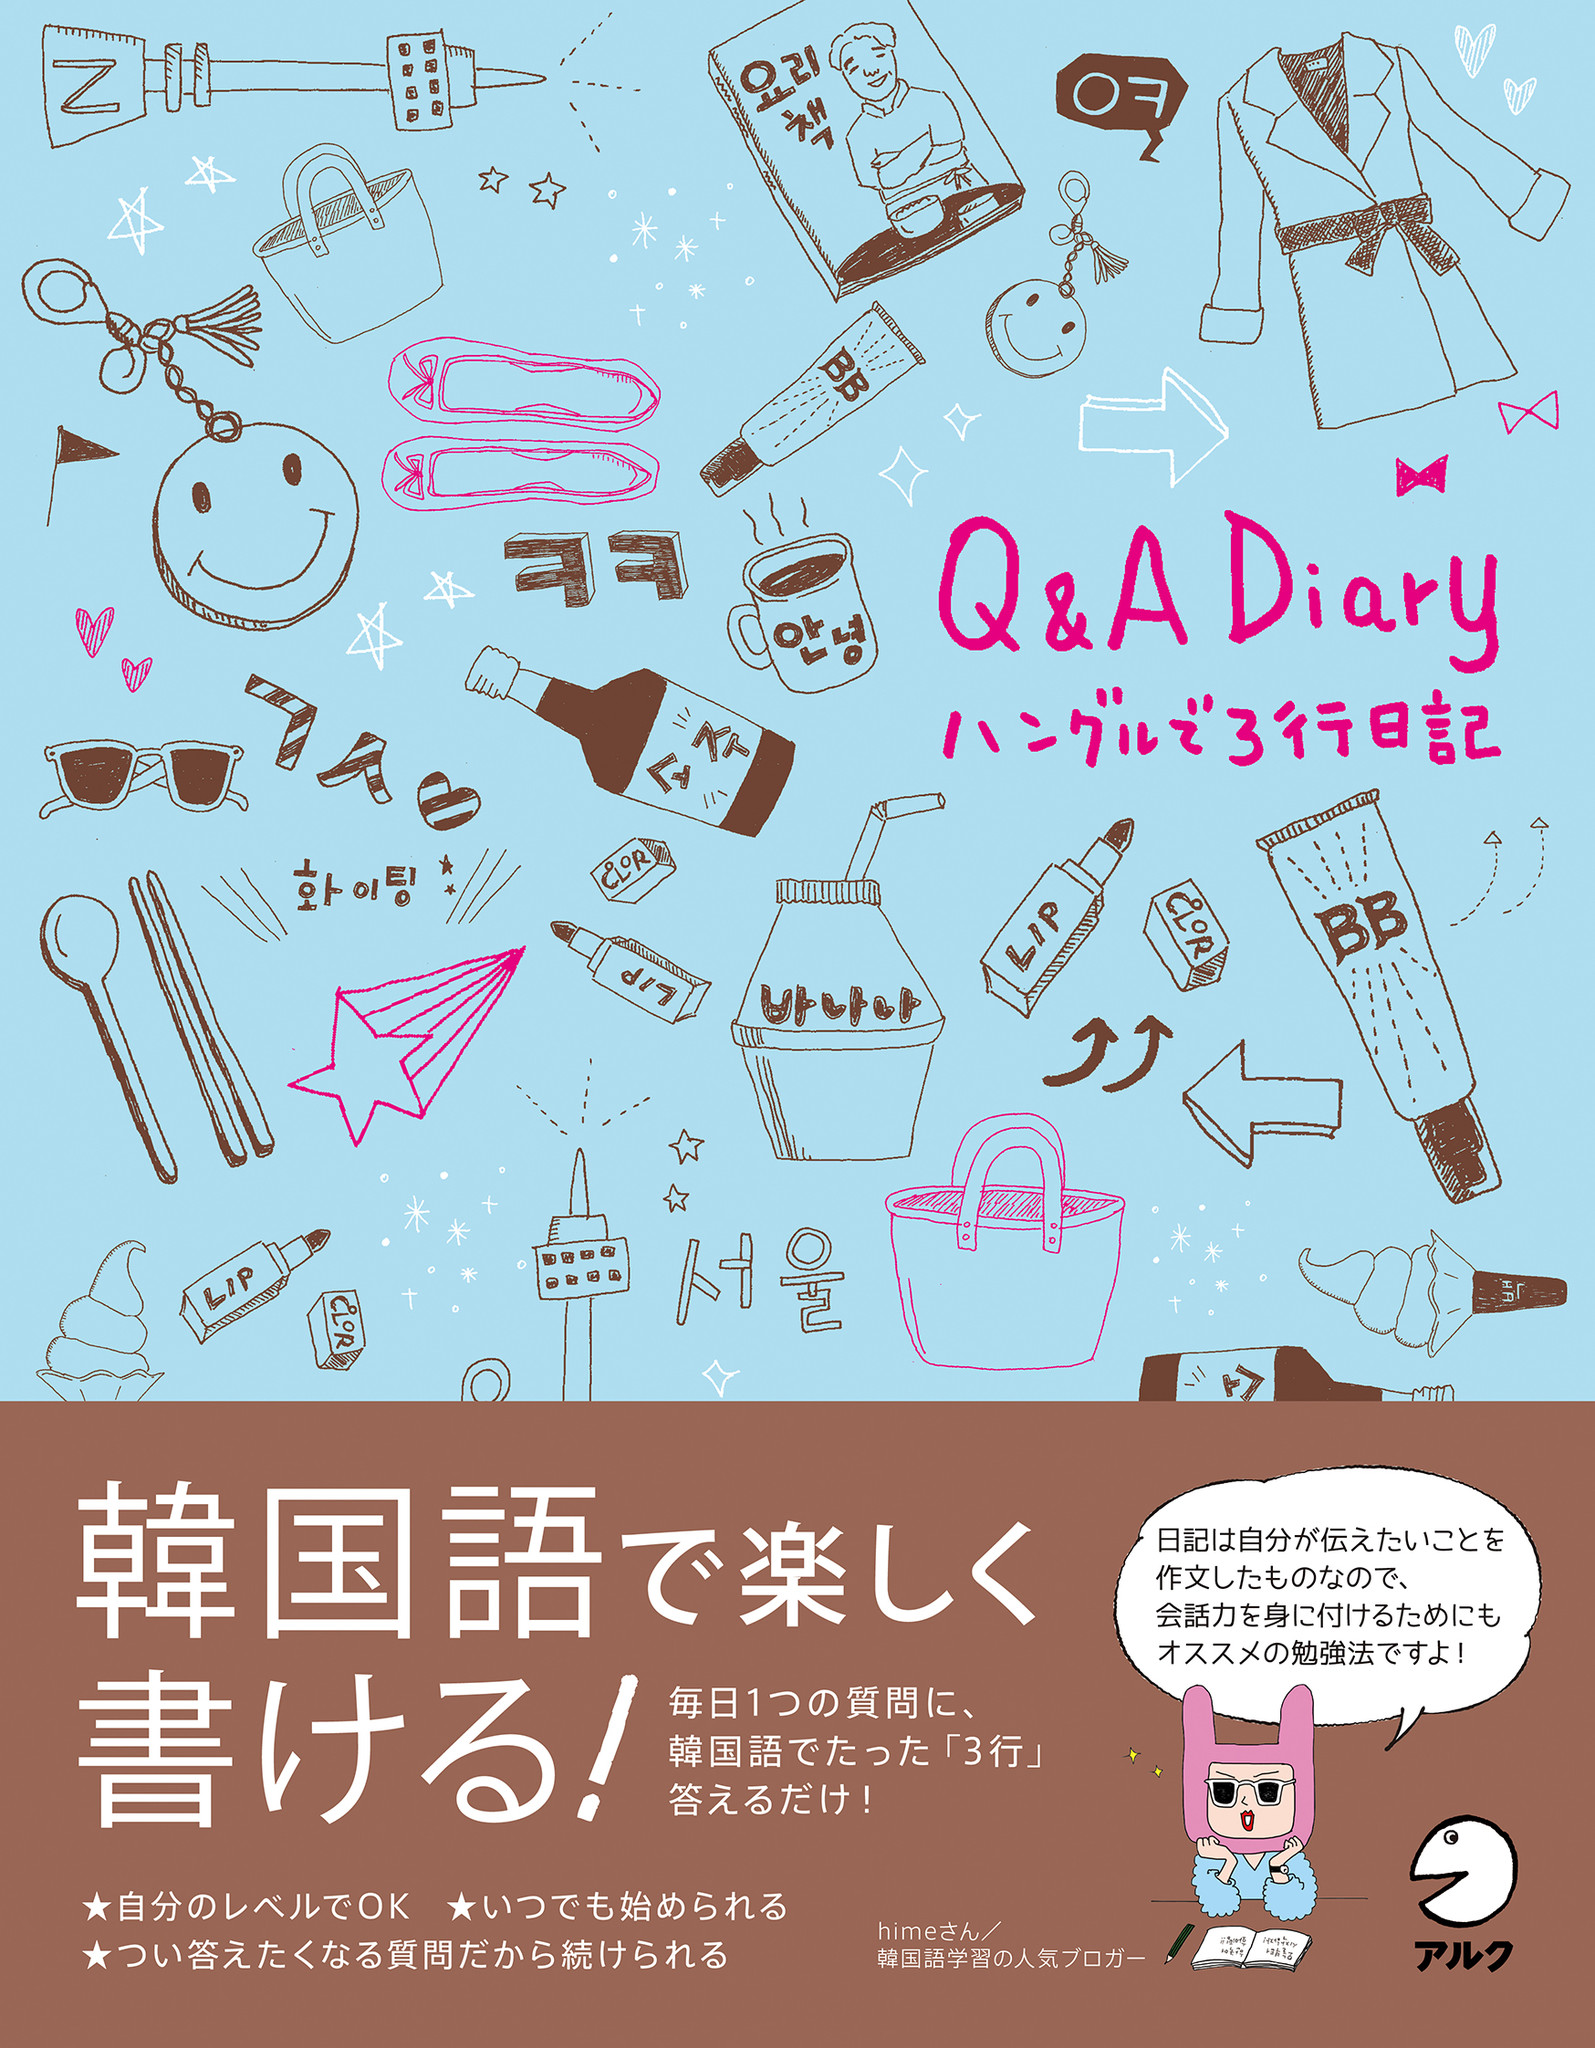 Amazonの韓国語 朝鮮語ジャンル 12月6日 で 発売前にも関わらず１位獲得 日記も韓国語も楽しく続く Q A Diary ハングルで3行日記 12月14日発売 株式会社アルクのプレスリリース